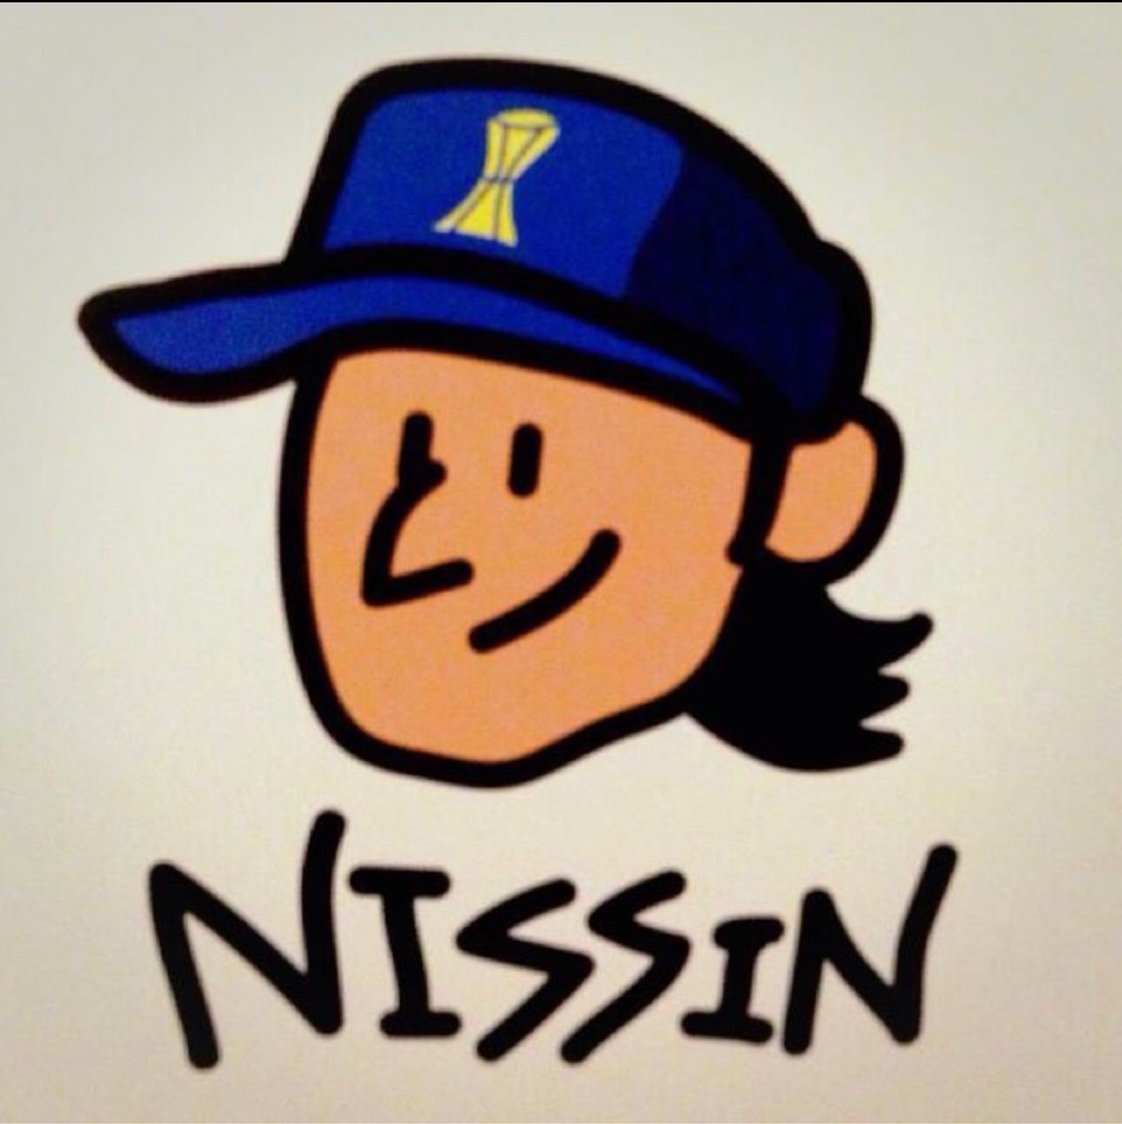 NISSIN240 Profile Picture